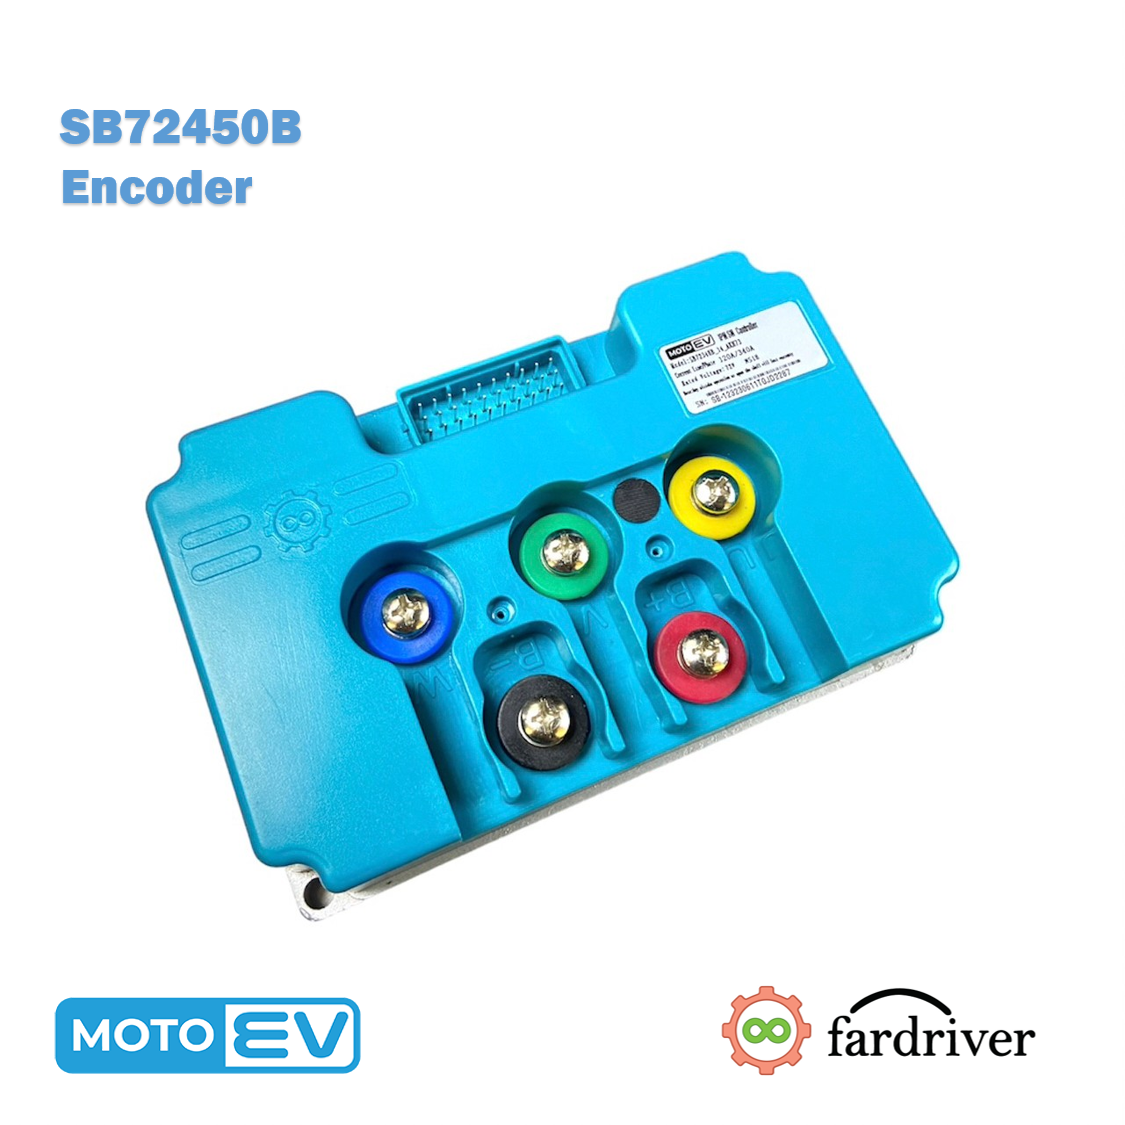 SB72450B Encoder 200A/450A